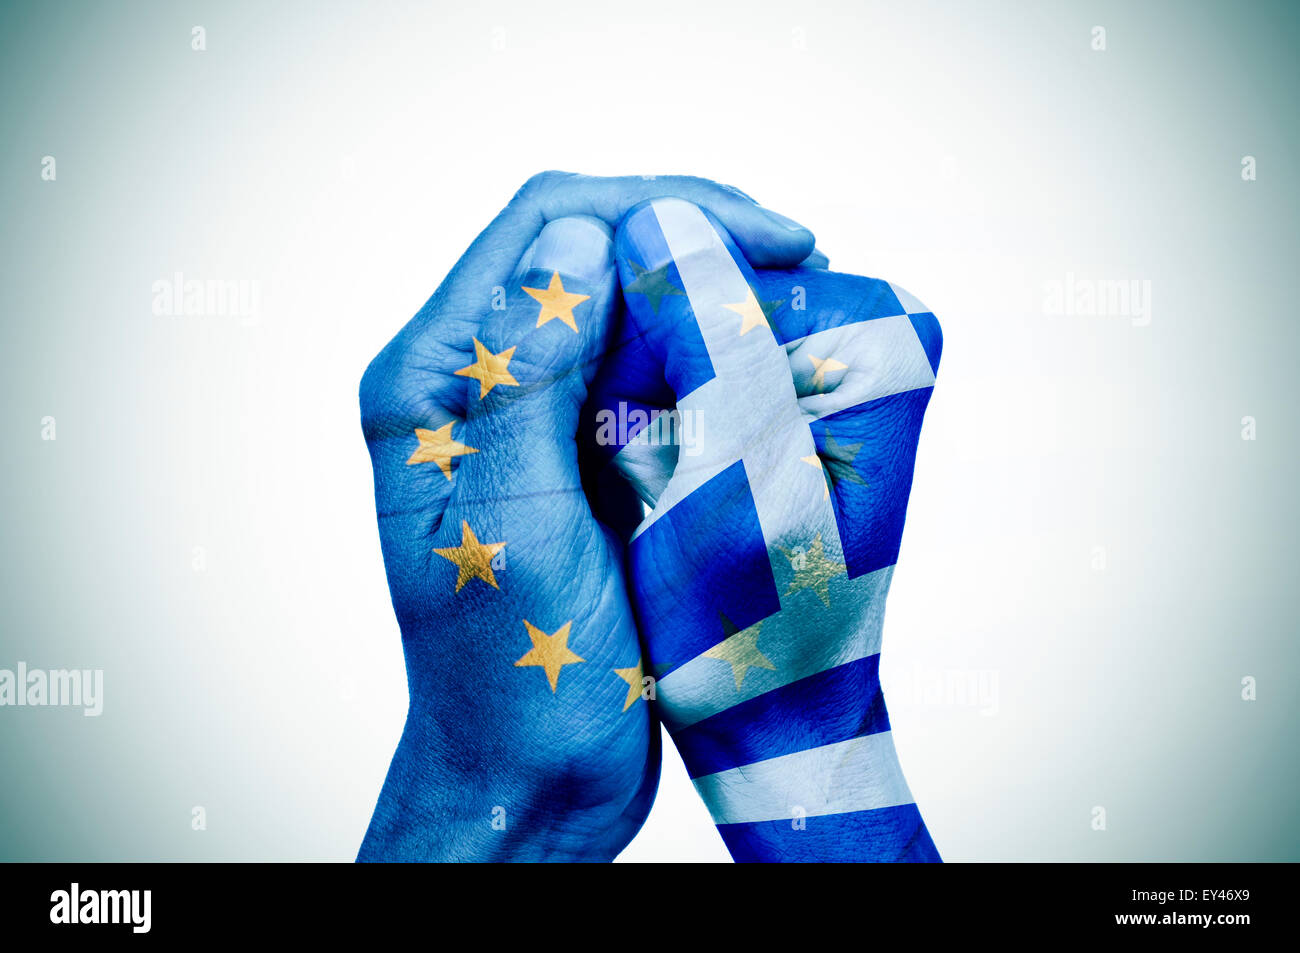 À Motifs de la main le drapeau de la Communauté européenne couvre un autre part, avec le drapeau de la Grèce Banque D'Images